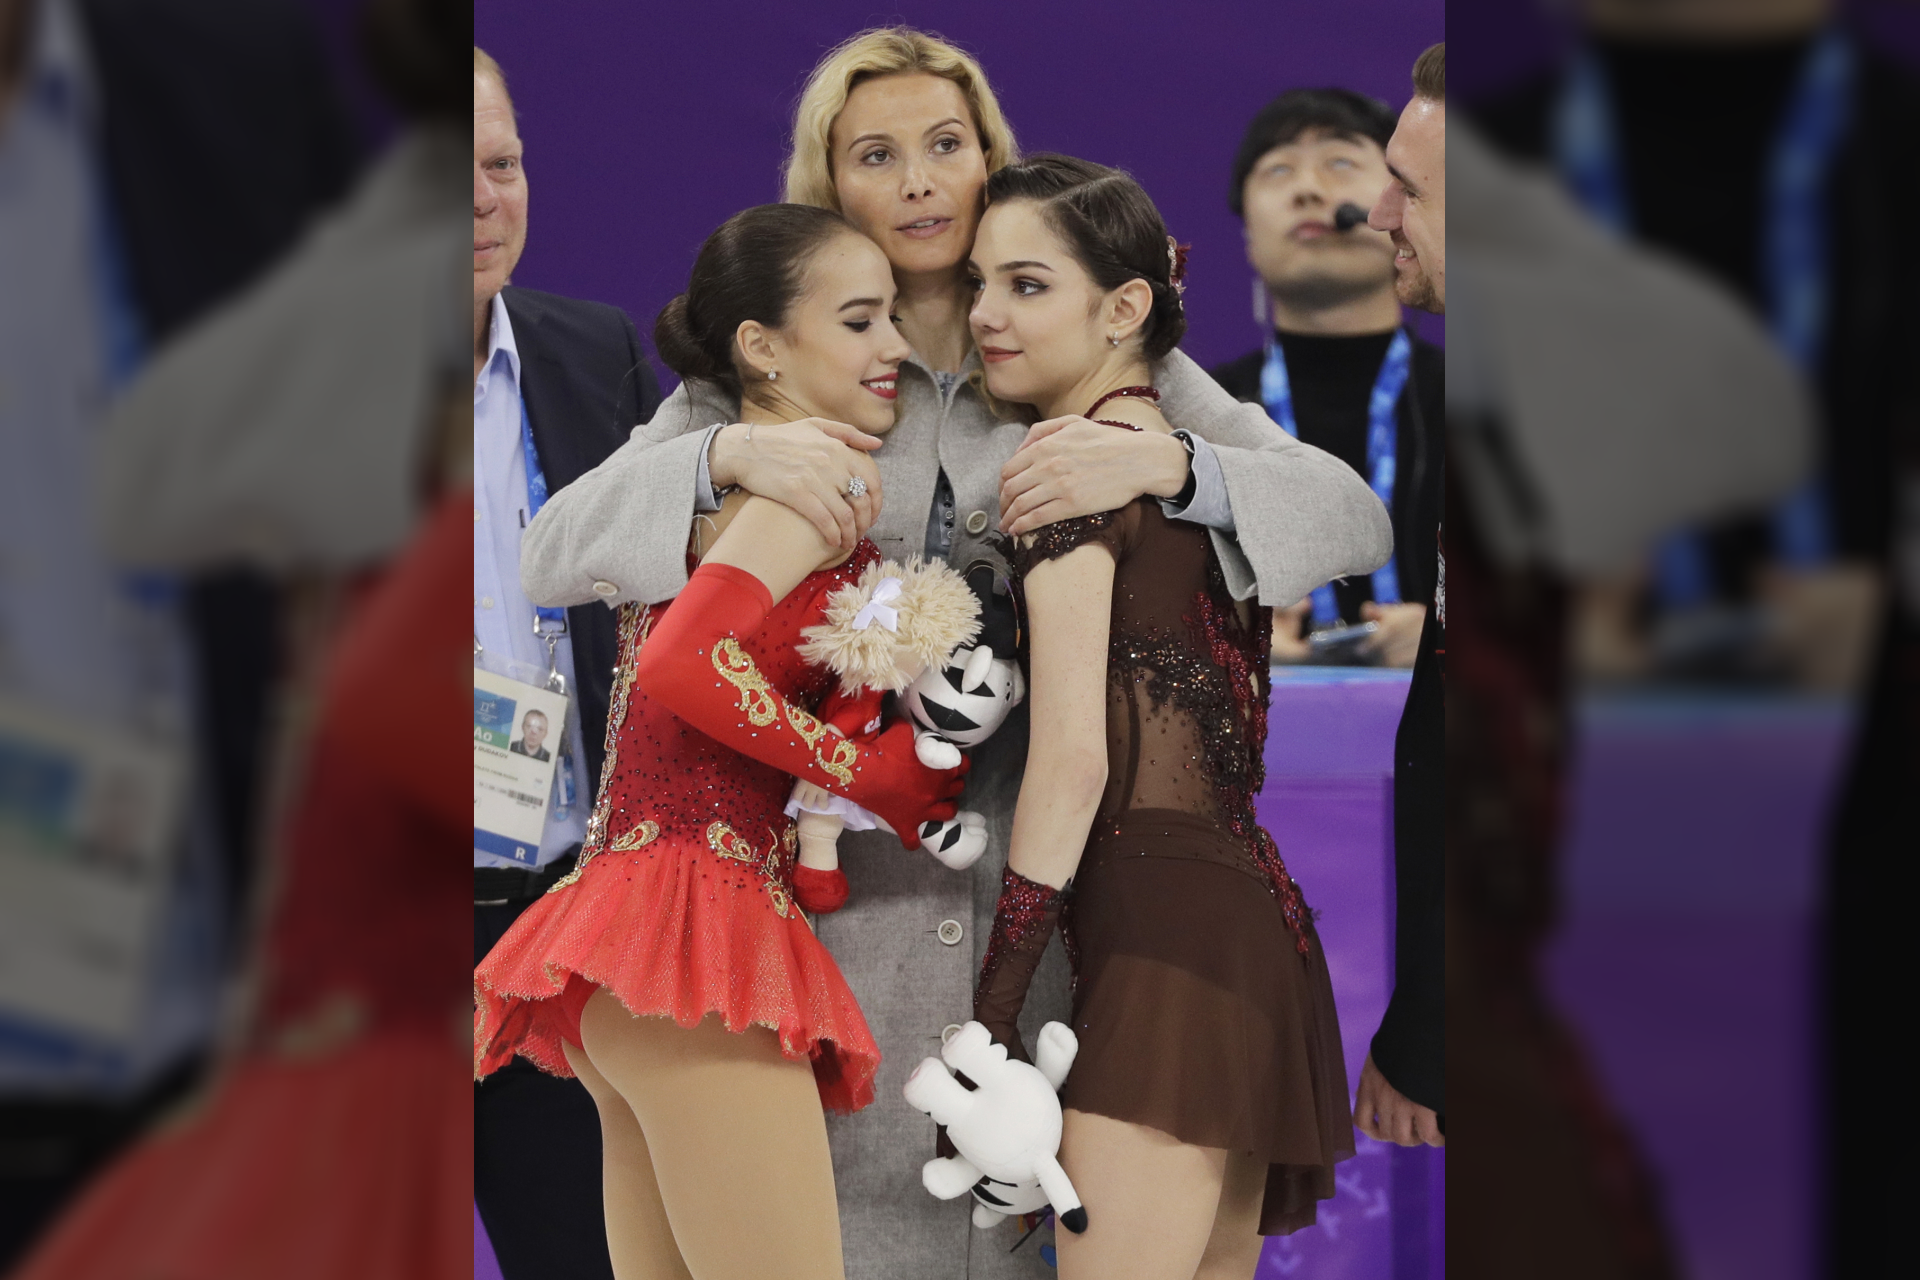  2018 metų Pjongčango olimpinės žaidynės – E.Tutberidzė glaudžia ant olimpinės pakylos užlipusias savo auklėtines: auksą iškovojusią A.Zagitovą (kairėje) ir sidabrą laimėjusią J.Medvedevą. AP/Scanpix nuotr.